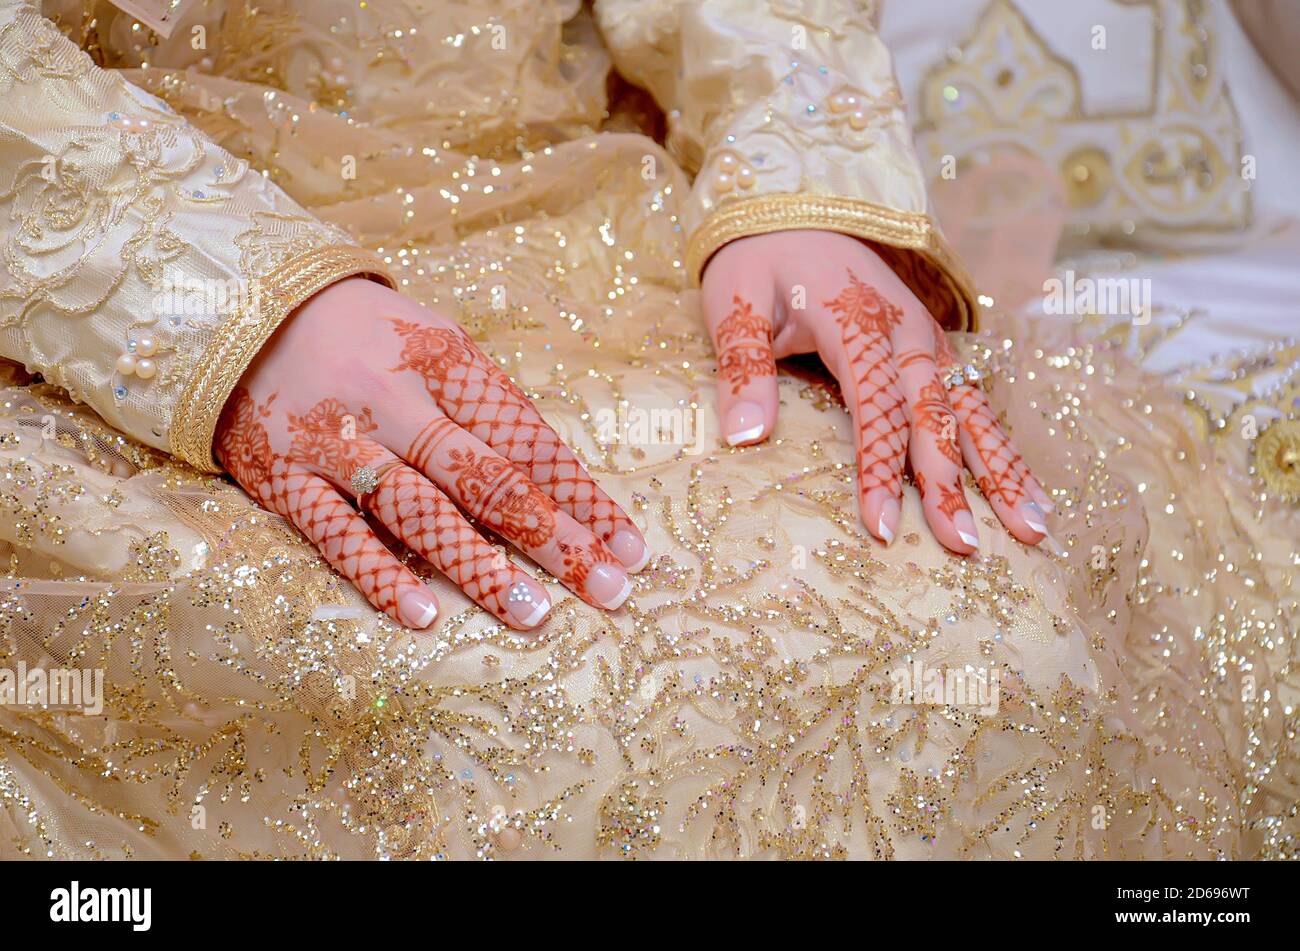 La main de la mariée arabe est tatouée au henné rouge. Traditions de mariage arabes Banque D'Images